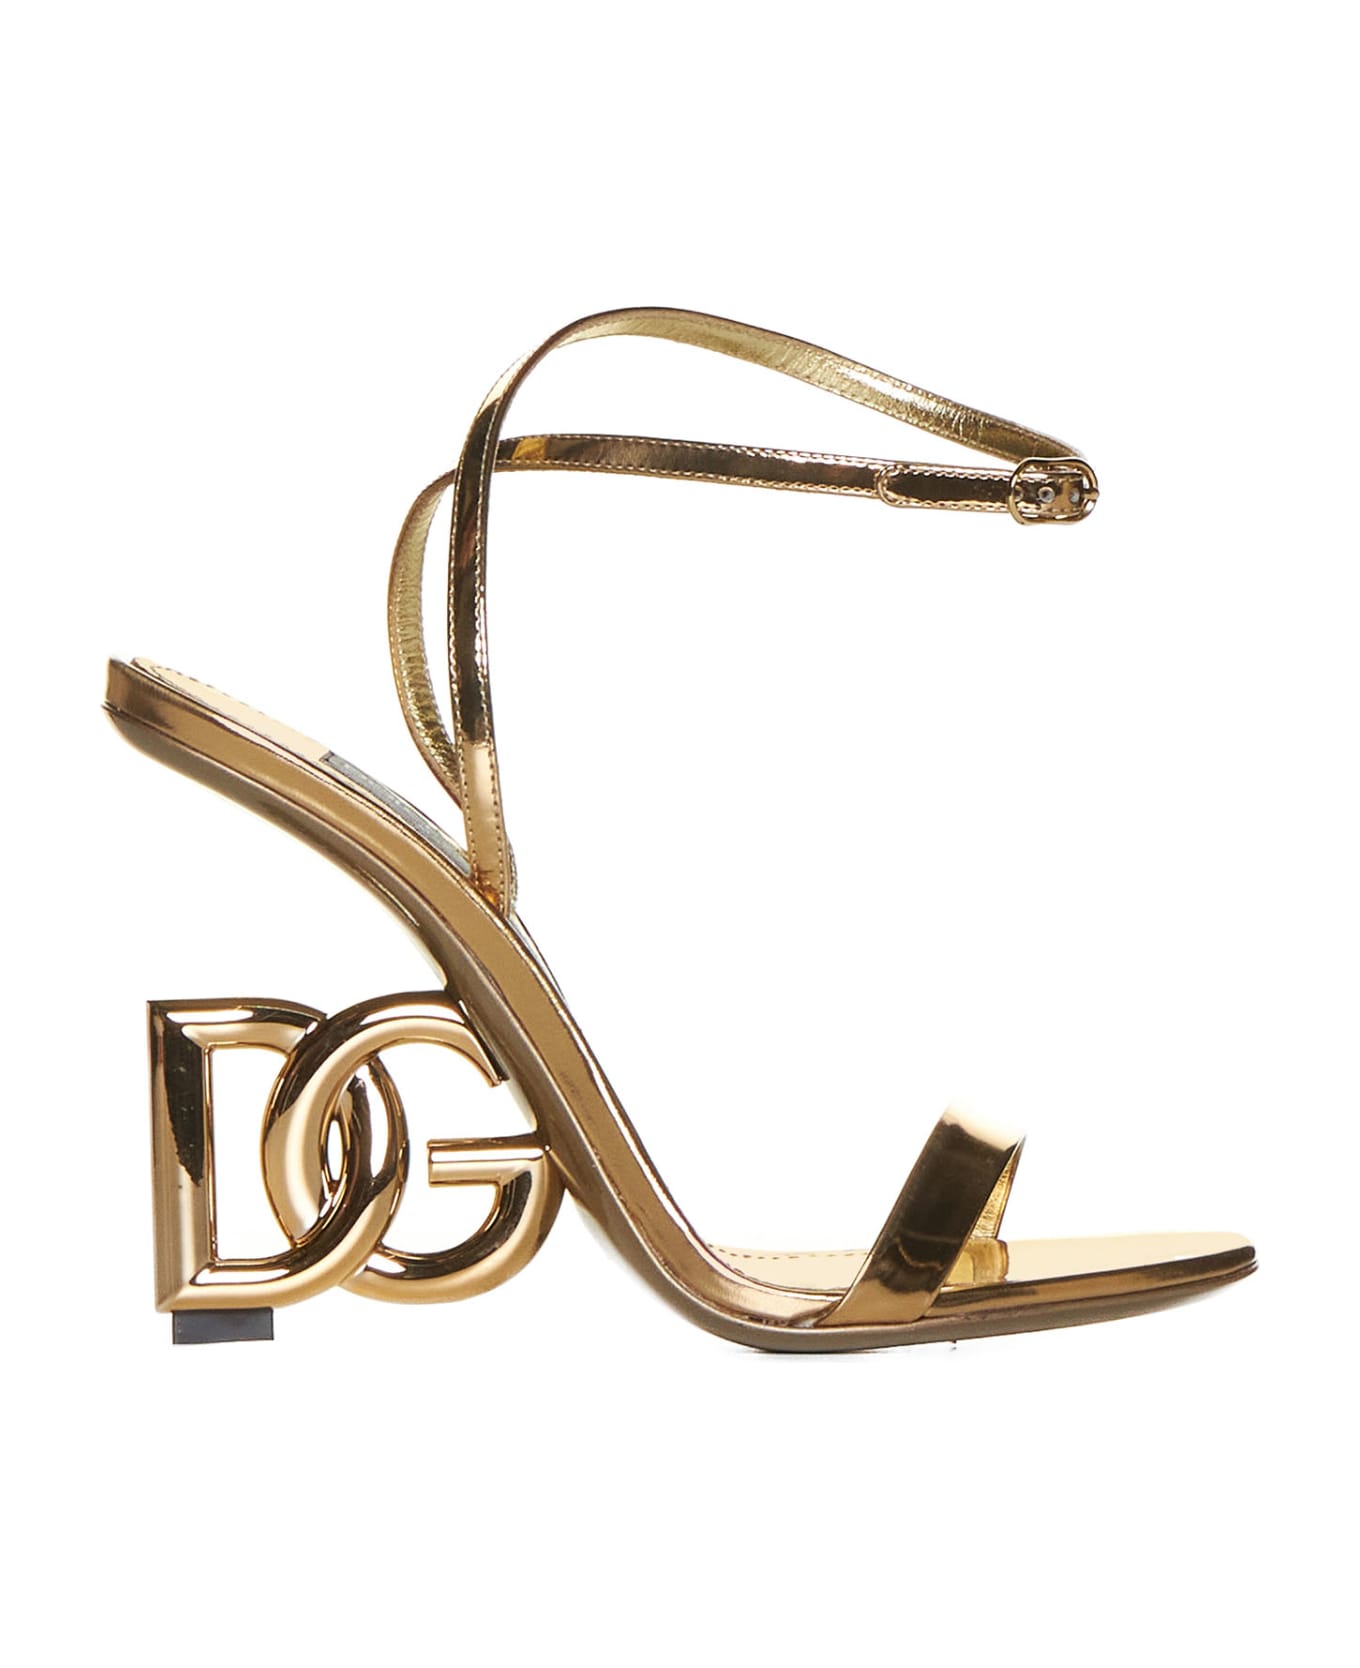 Dolce & Gabbana Dg Logo Pump Sandals - Gold サンダル